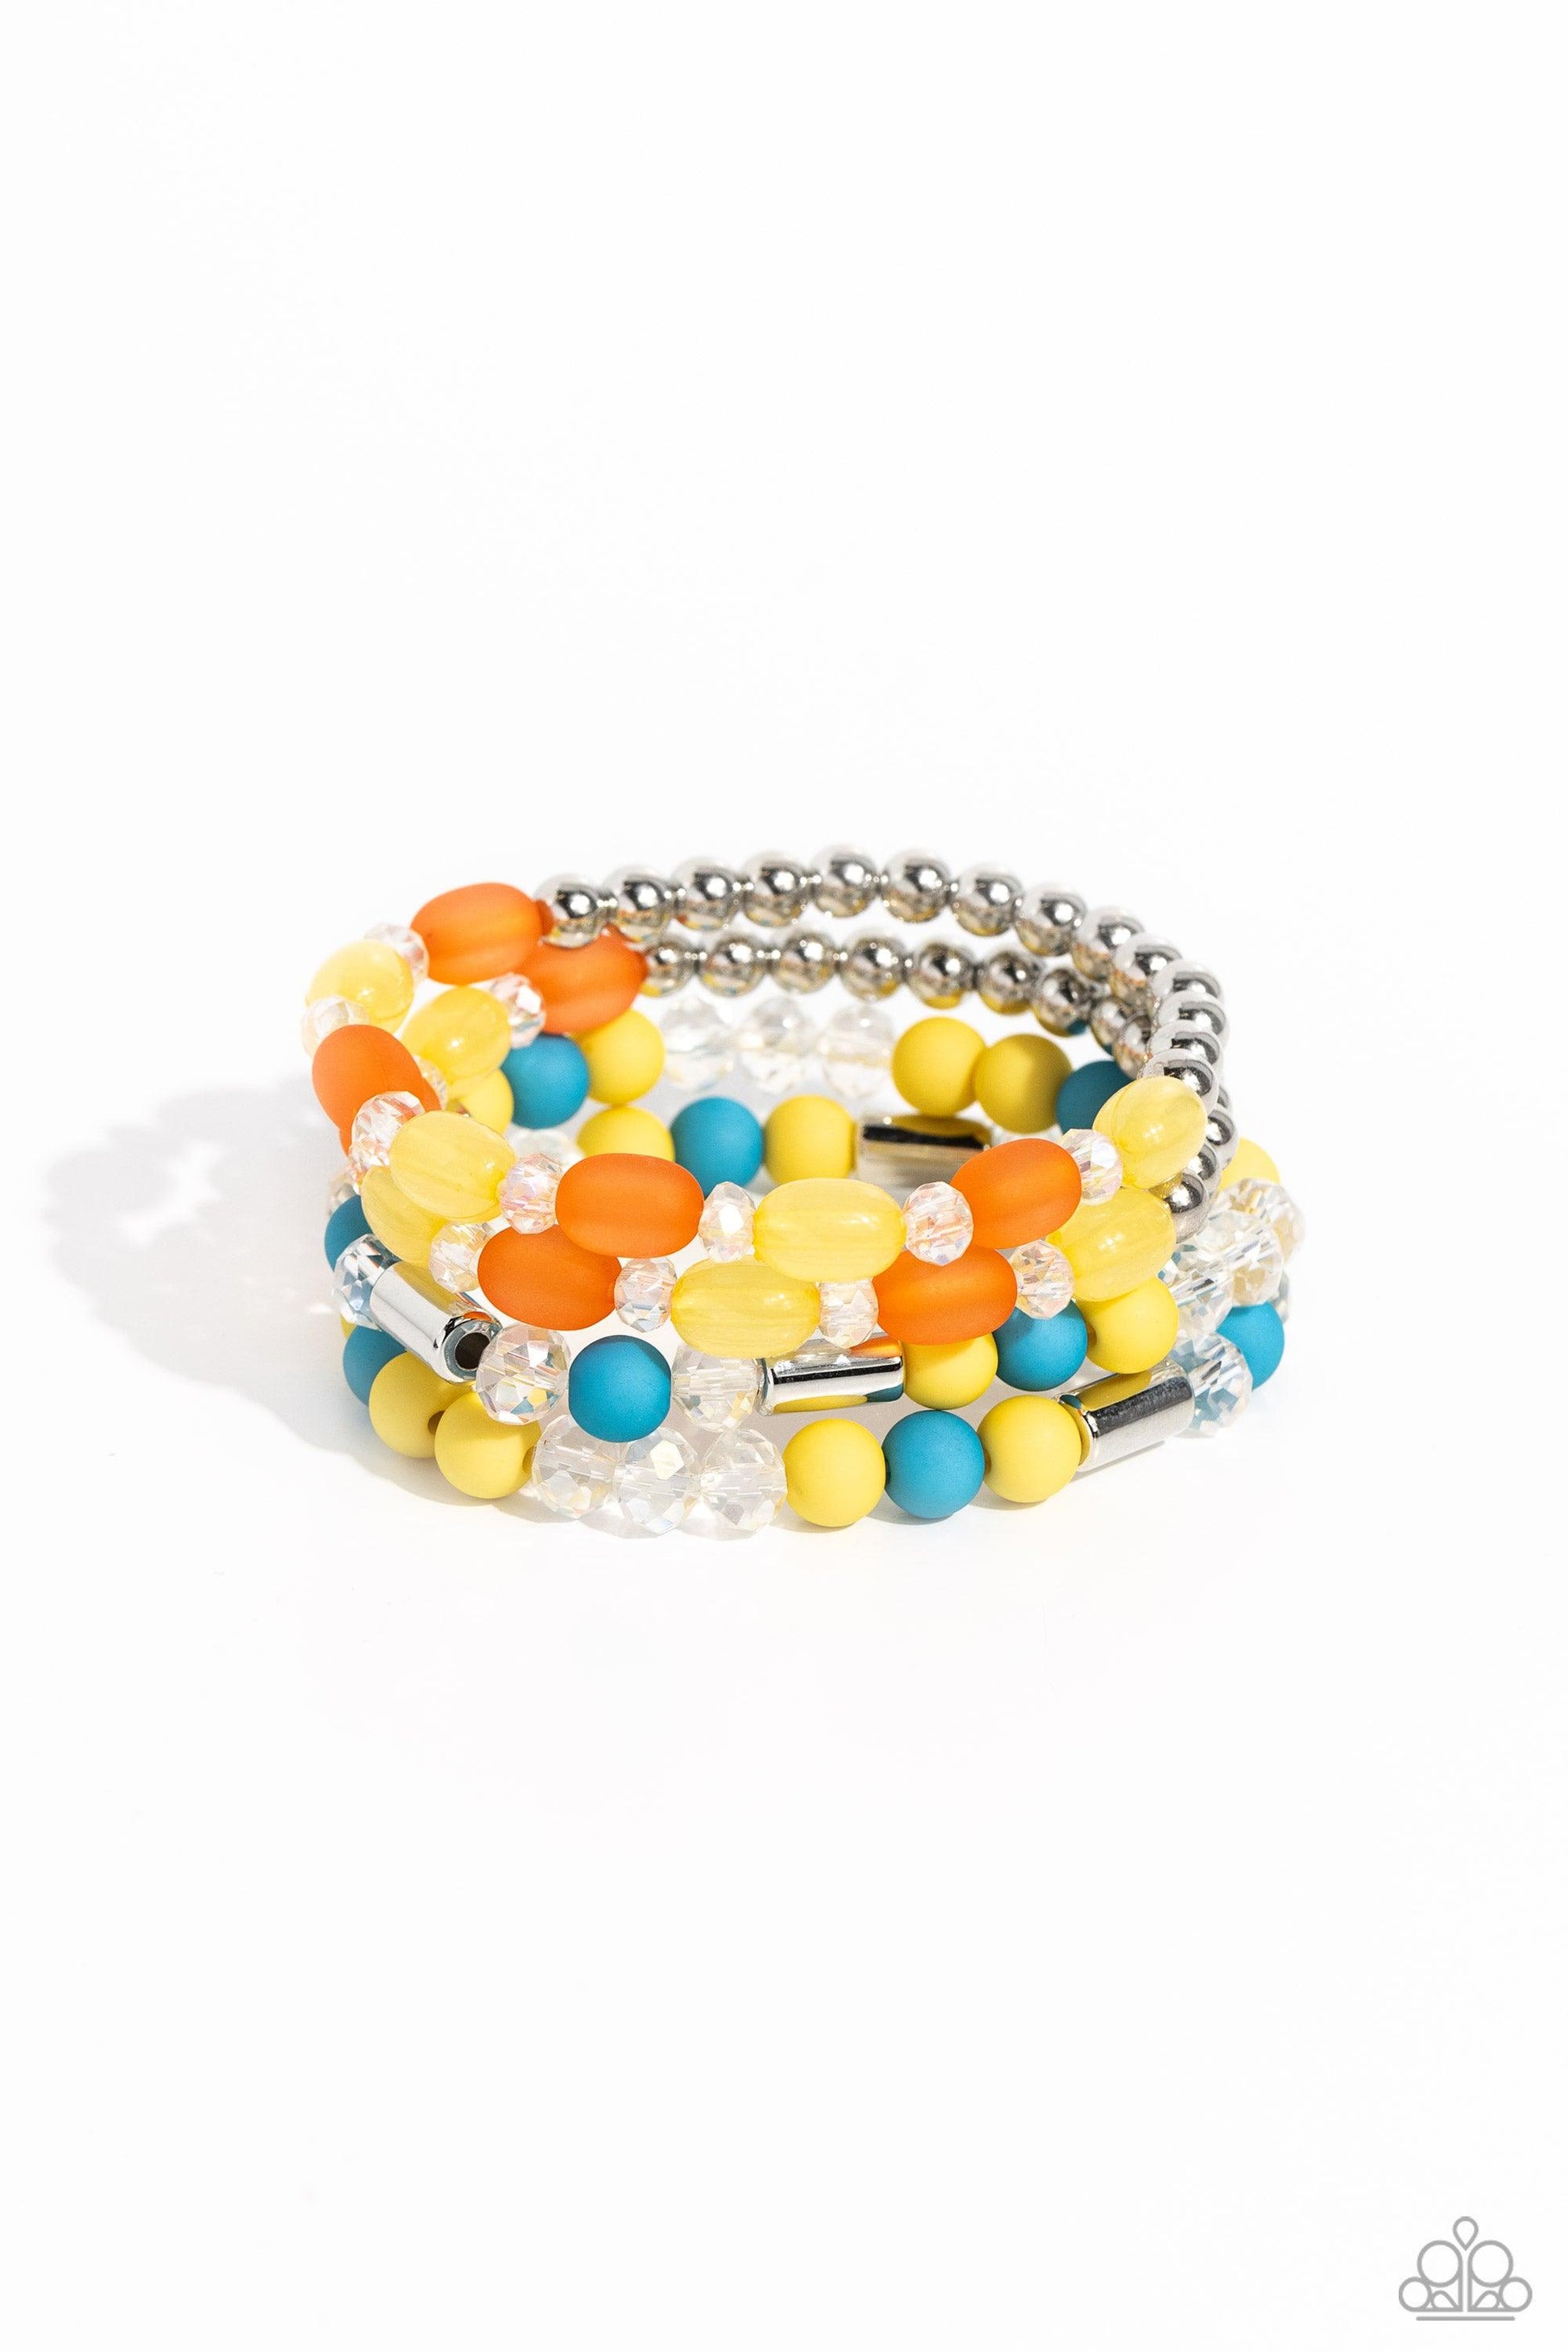 Paparazzi Accessories - Glassy Gait - Multicolor Bracelet - Bling by JessieK